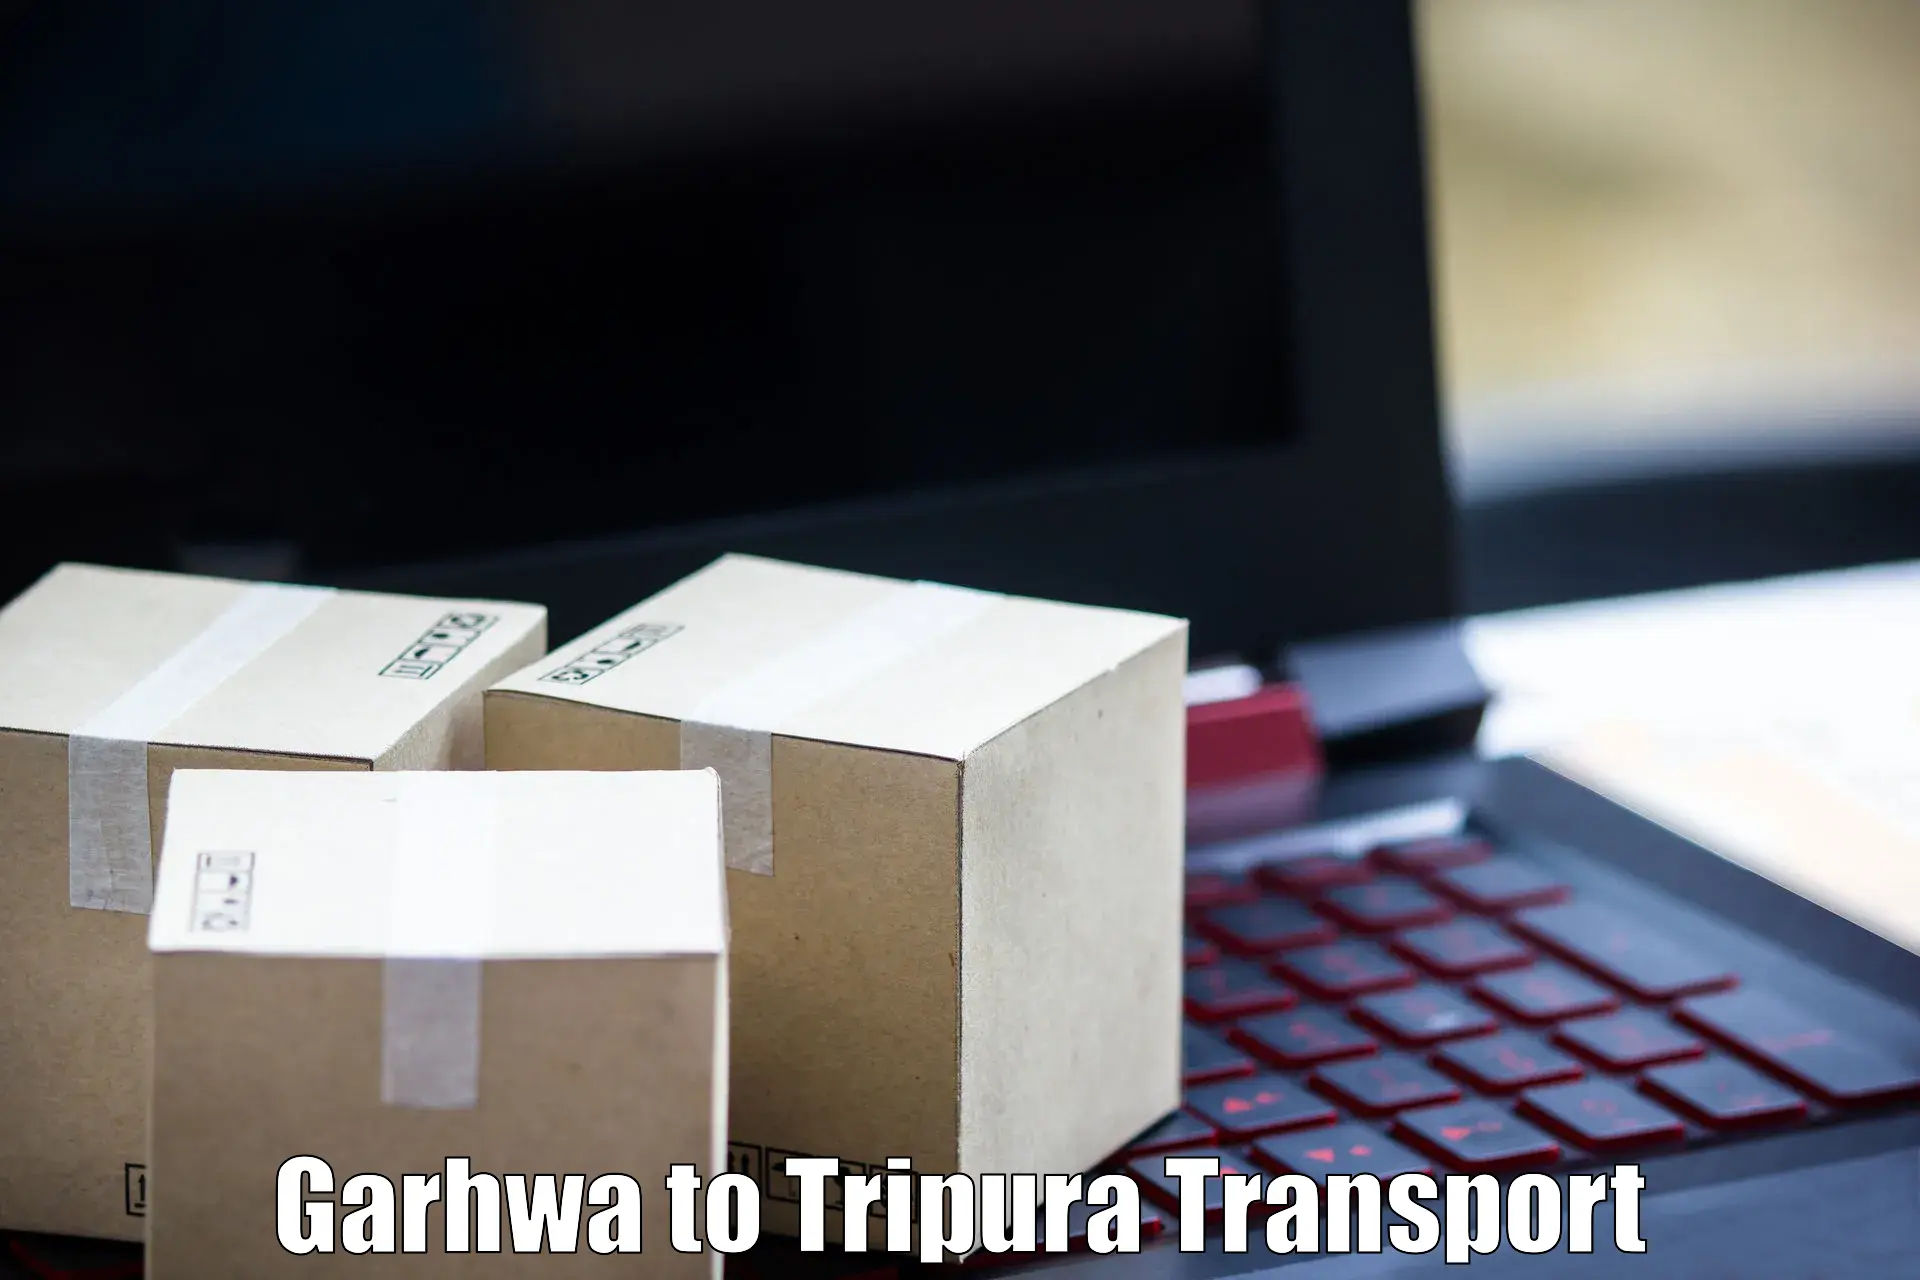 Online transport service Garhwa to Dharmanagar